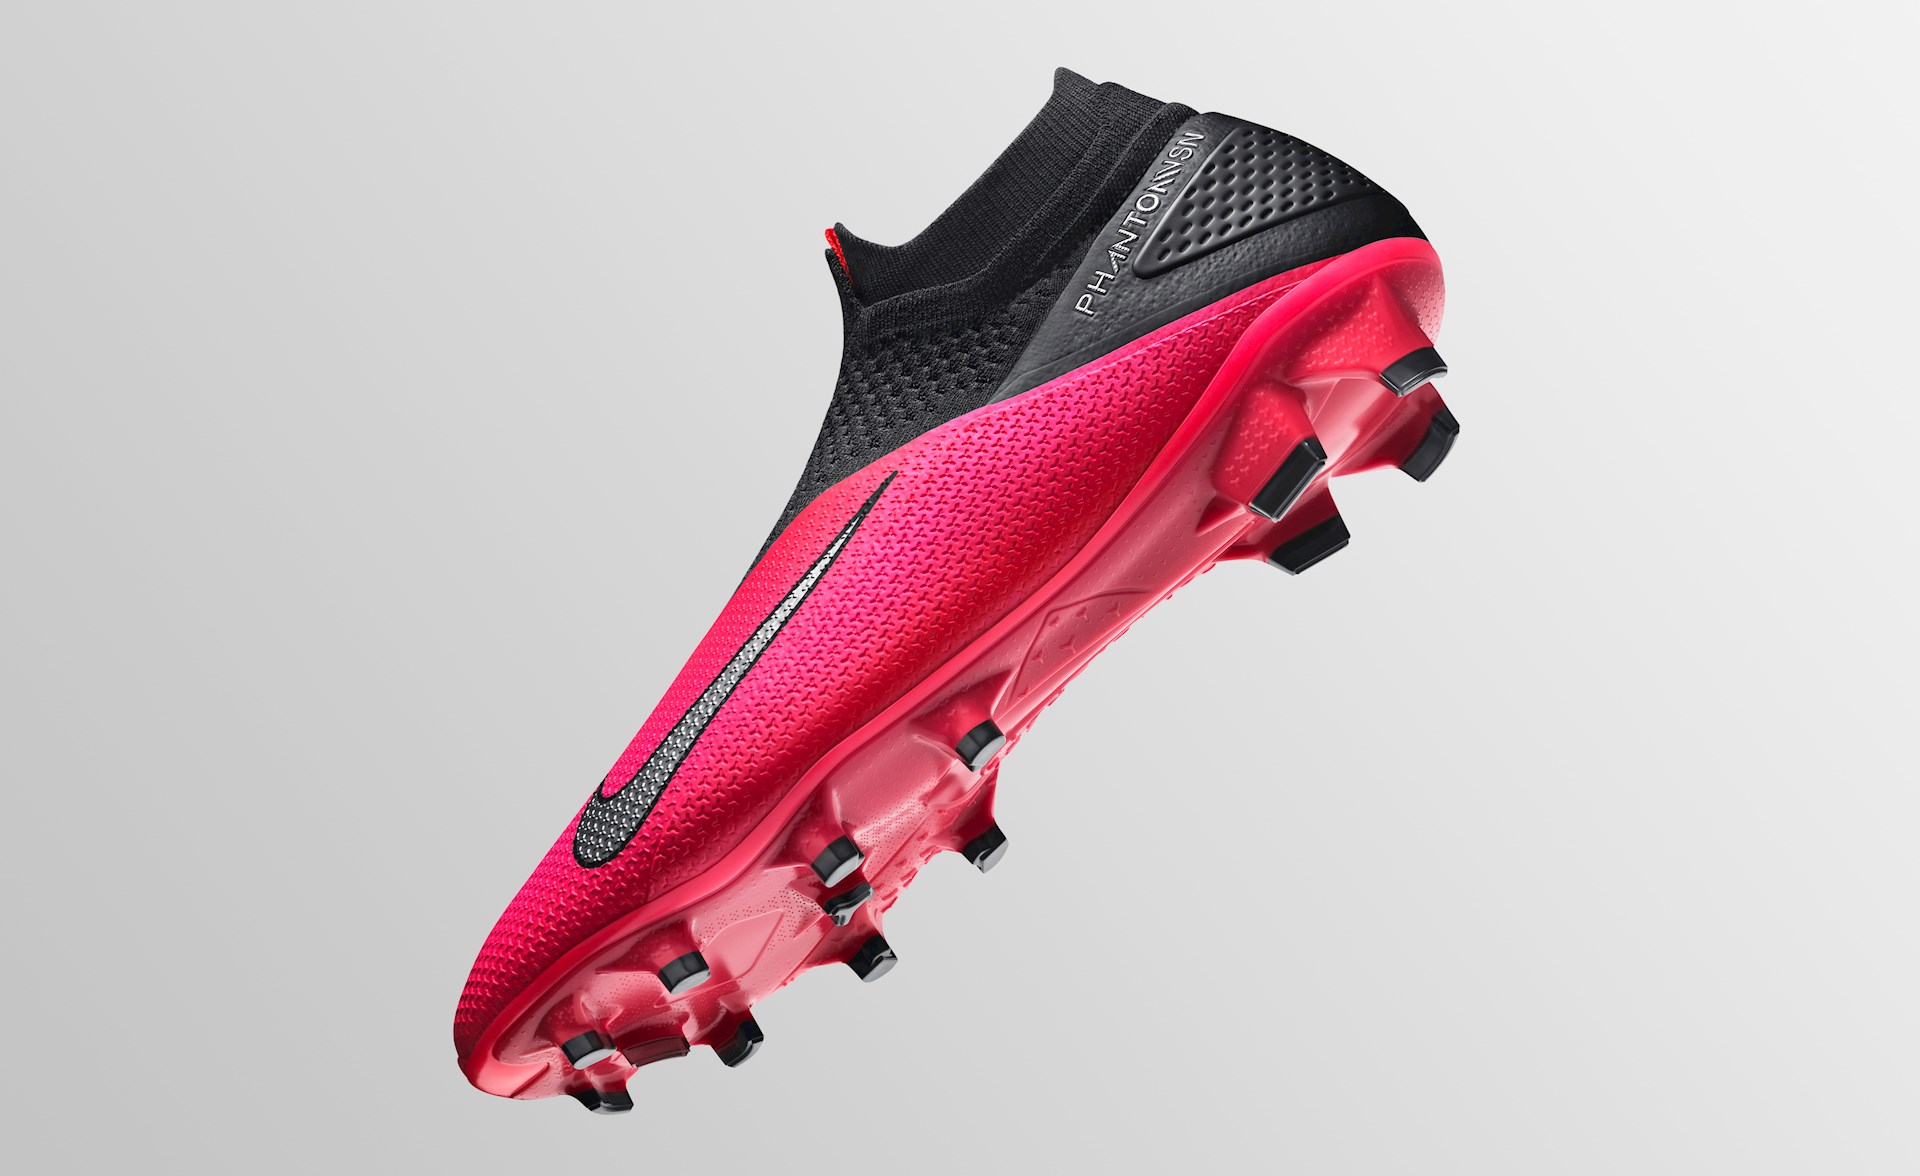 stil gips Geurig Alle kenmerken van de Nike Phantom VSN II voetbalschoenen -  Voetbal-schoenen.eu